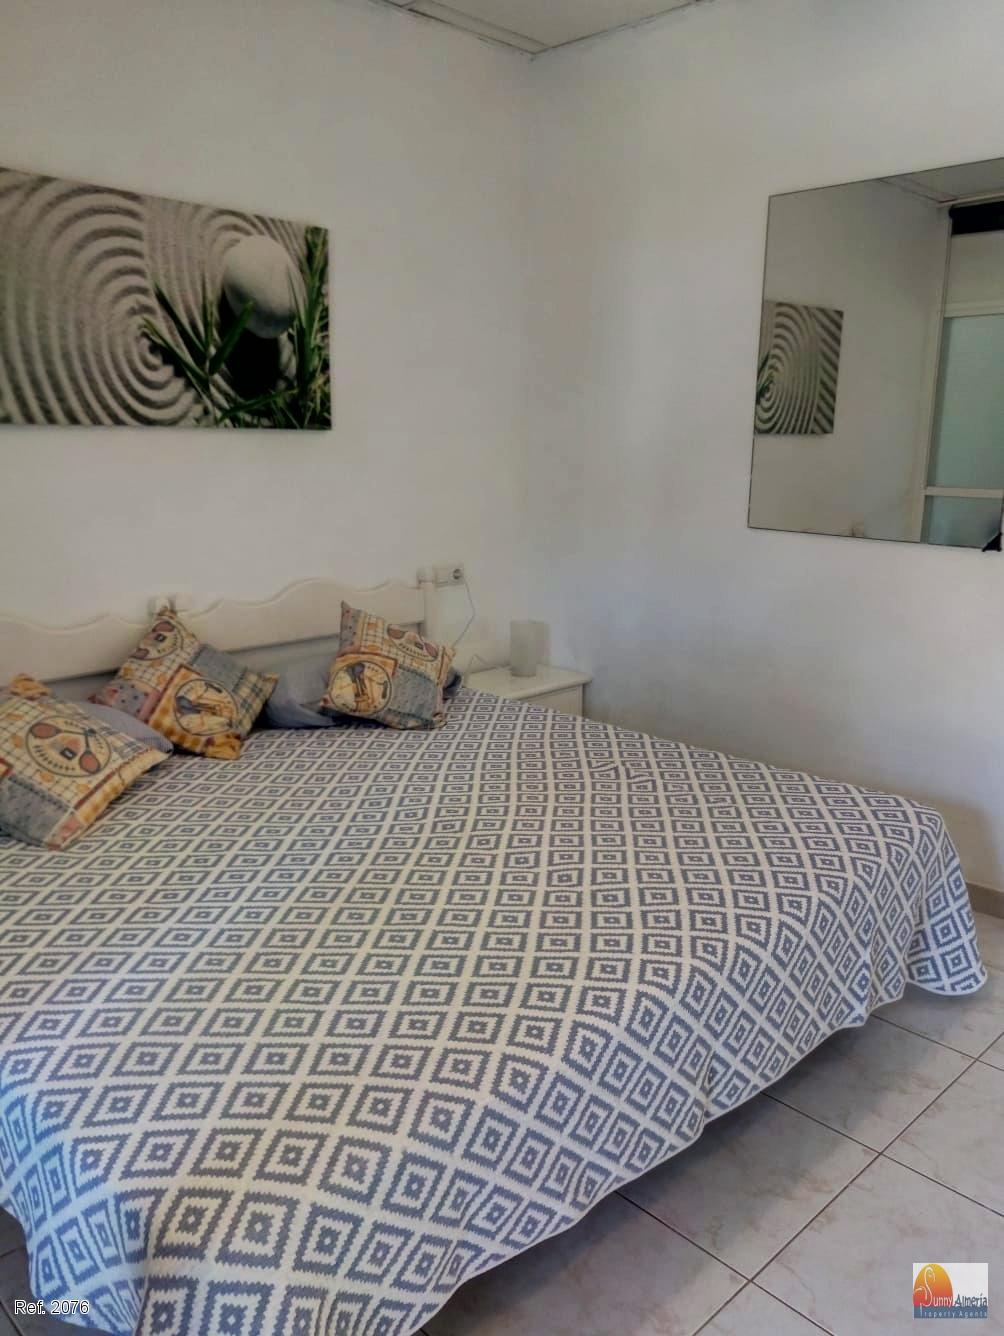 Bungalow for rent in Avenida las Gaviotas   19 (Roquetas de Mar), 900 €/month